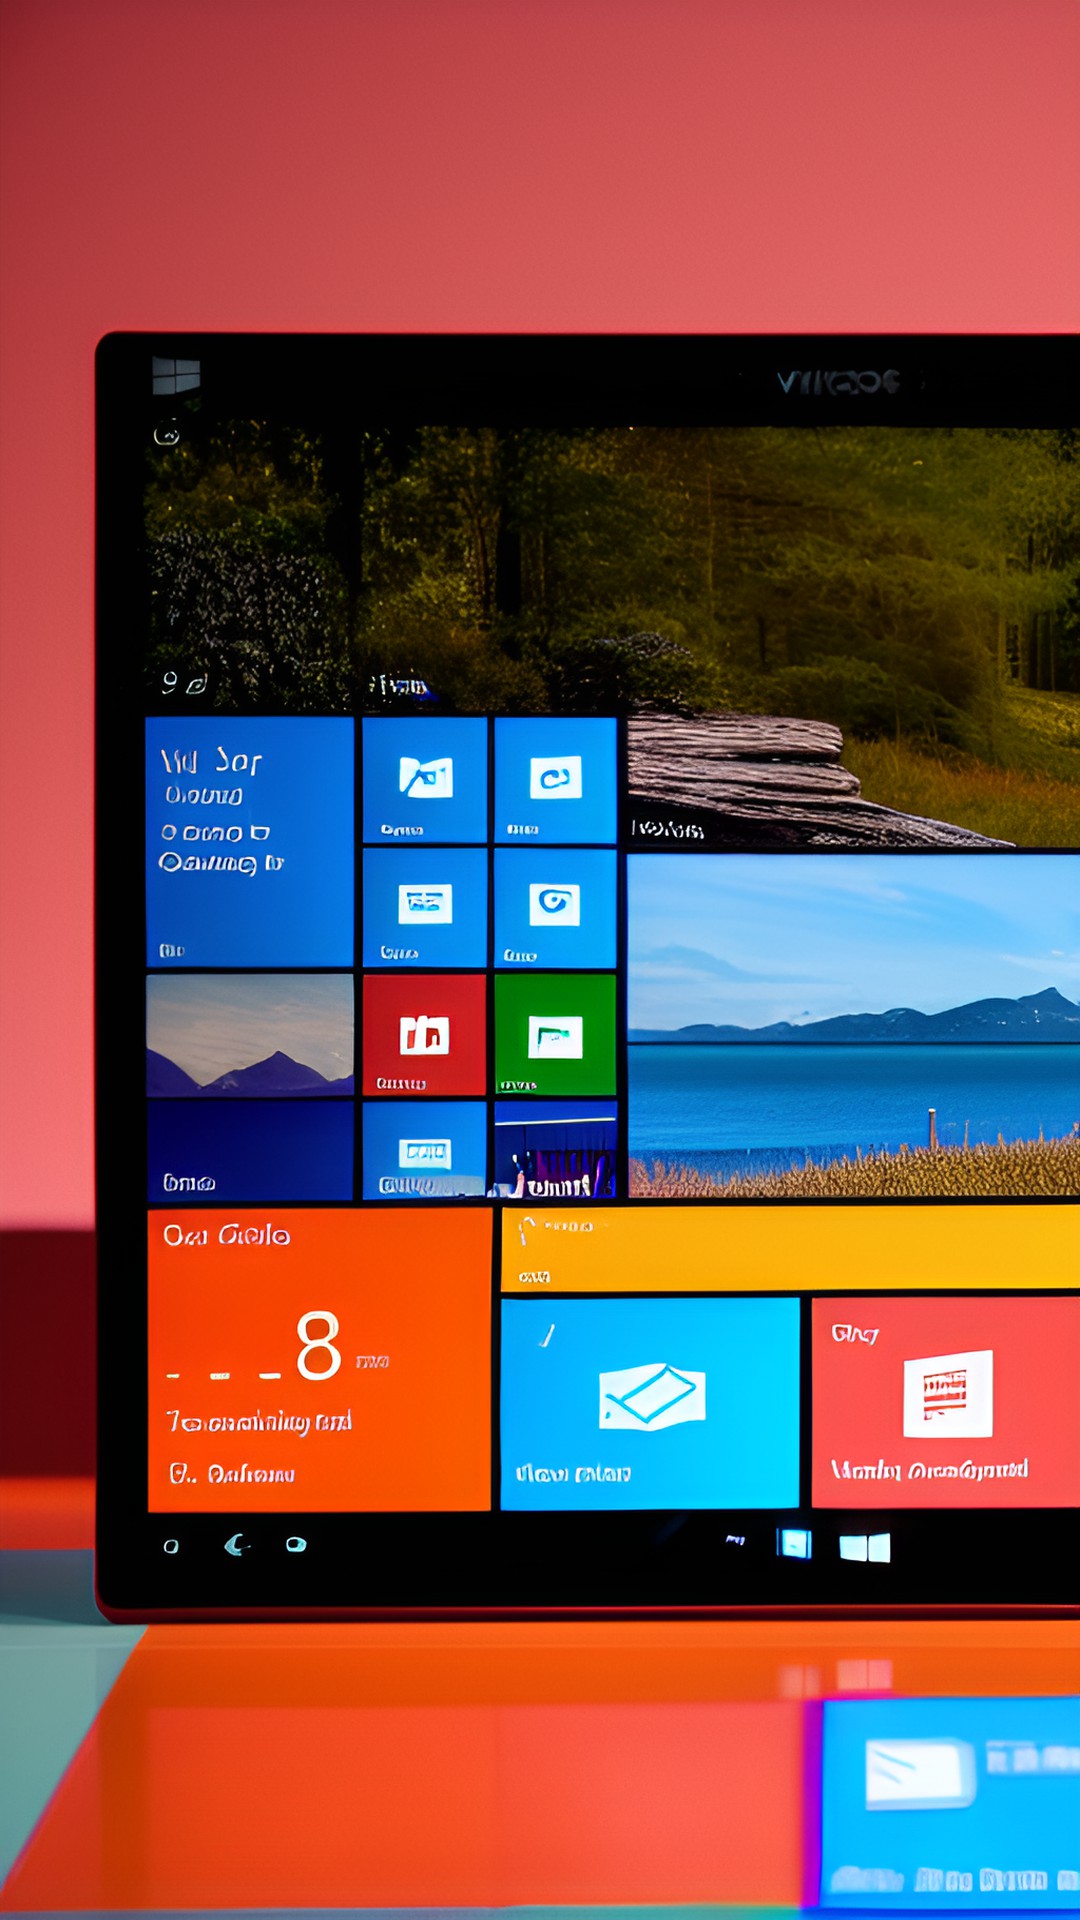 Scopri tutto su Windows 10: dalla guida all'installazione ai problemi comuni